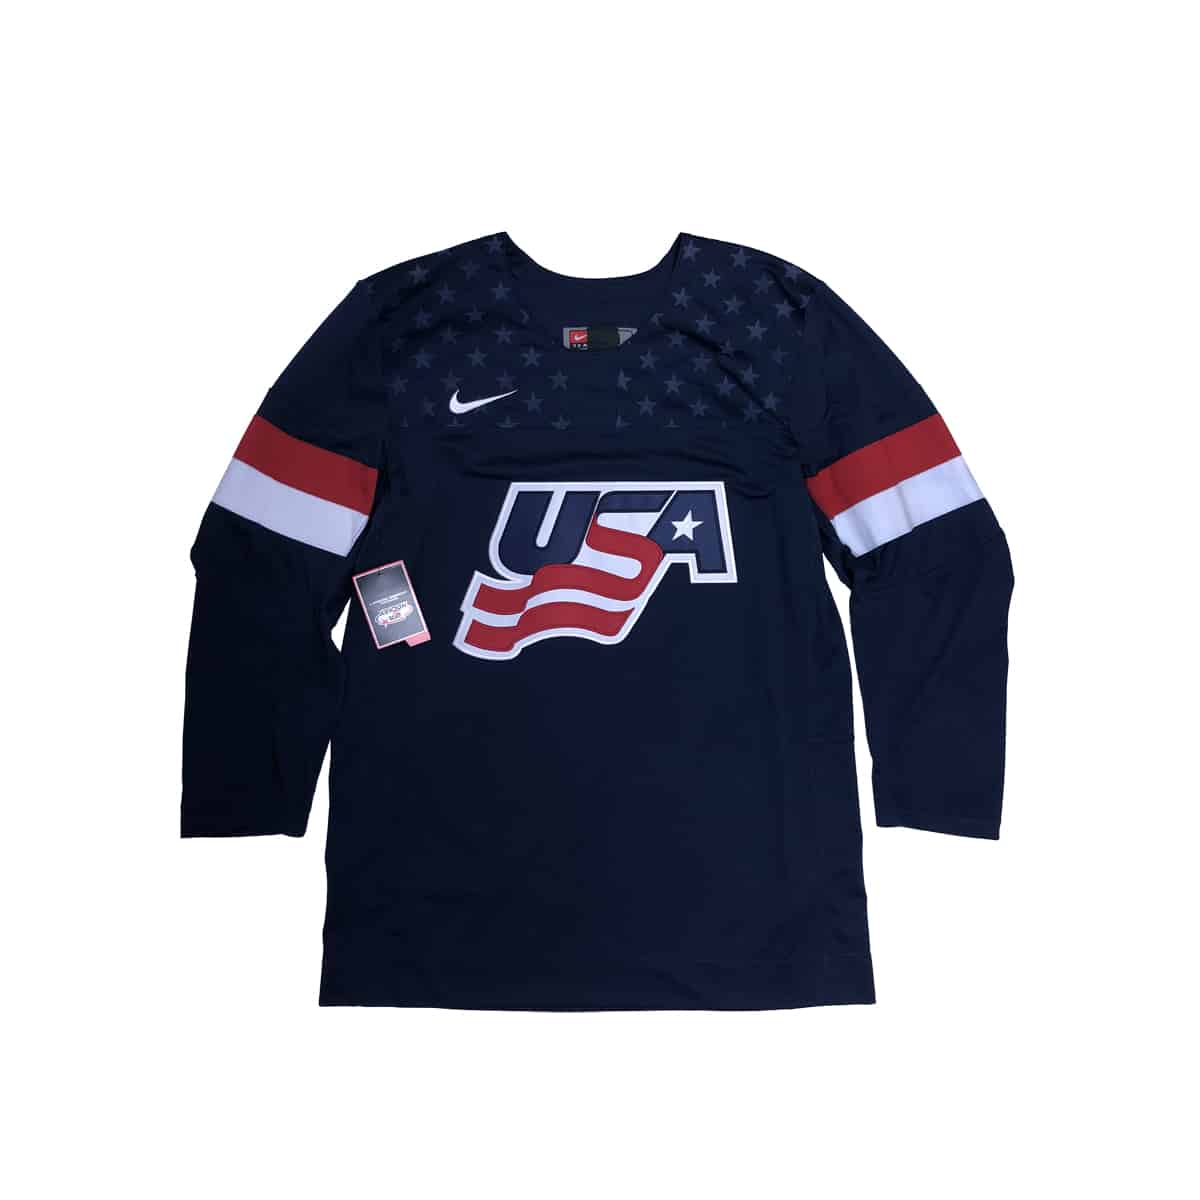 USA Hockey Authentic Nike Hockey Jersey